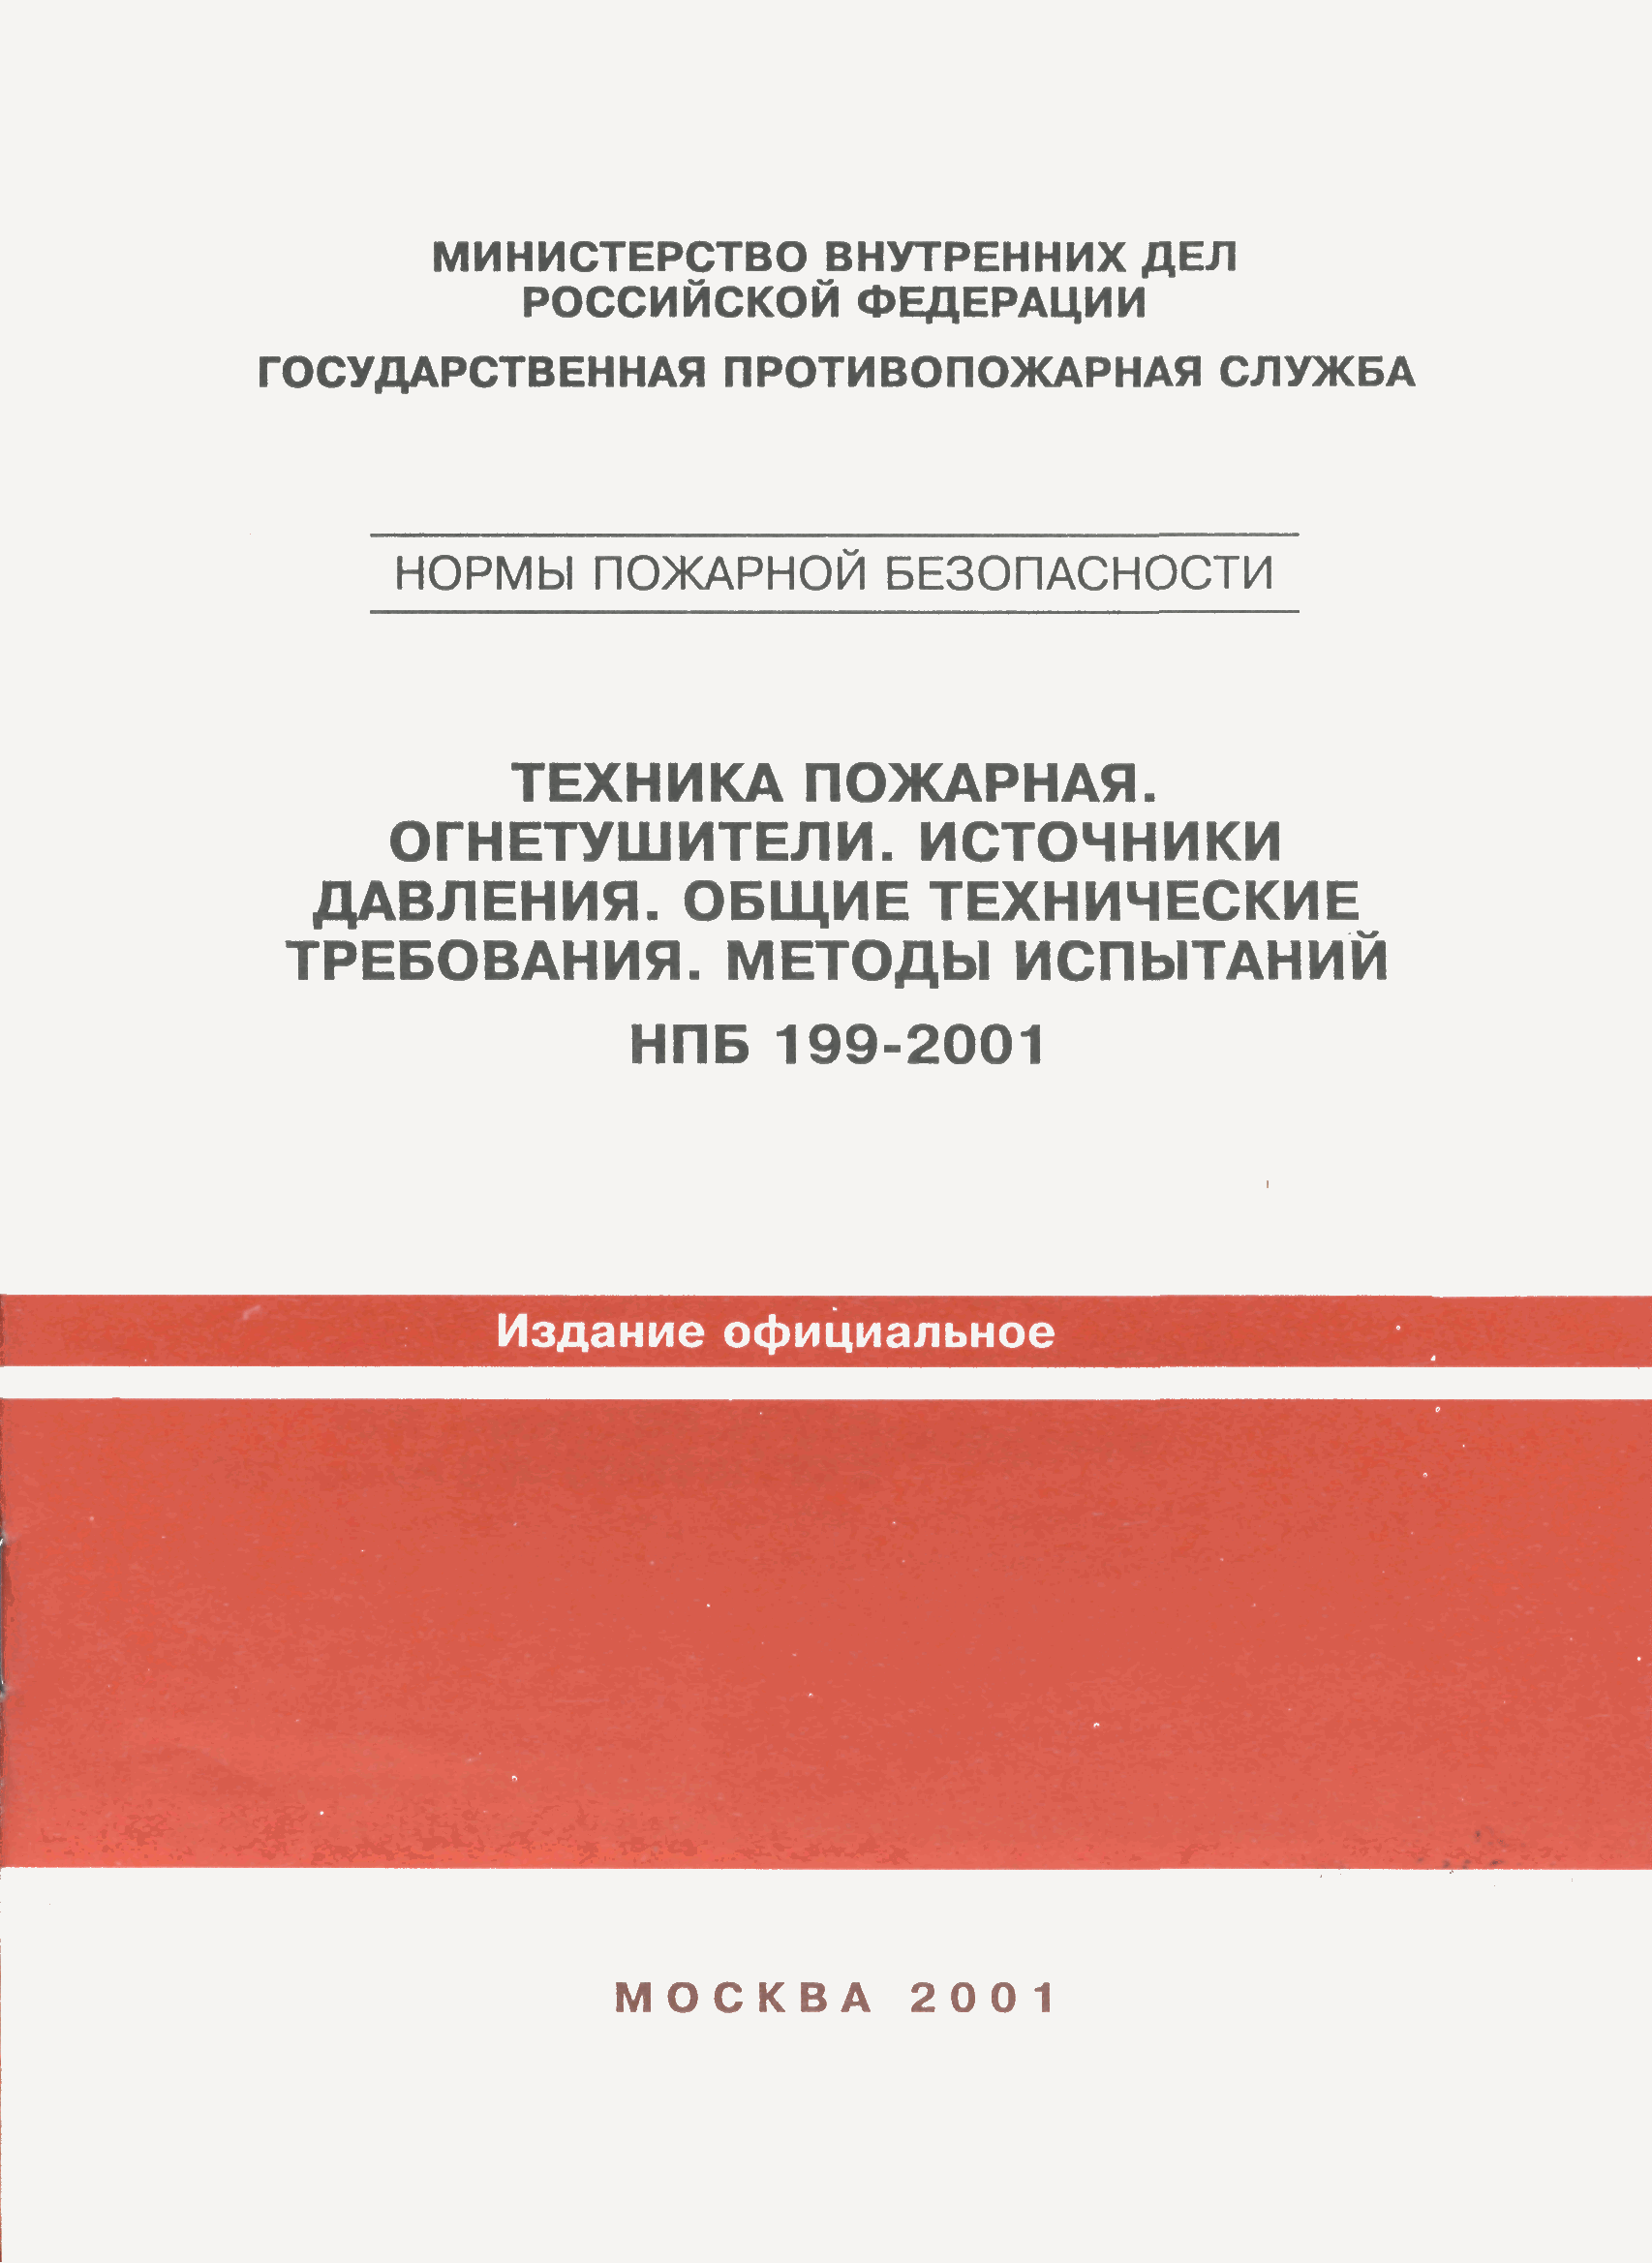 НПБ 199-2001